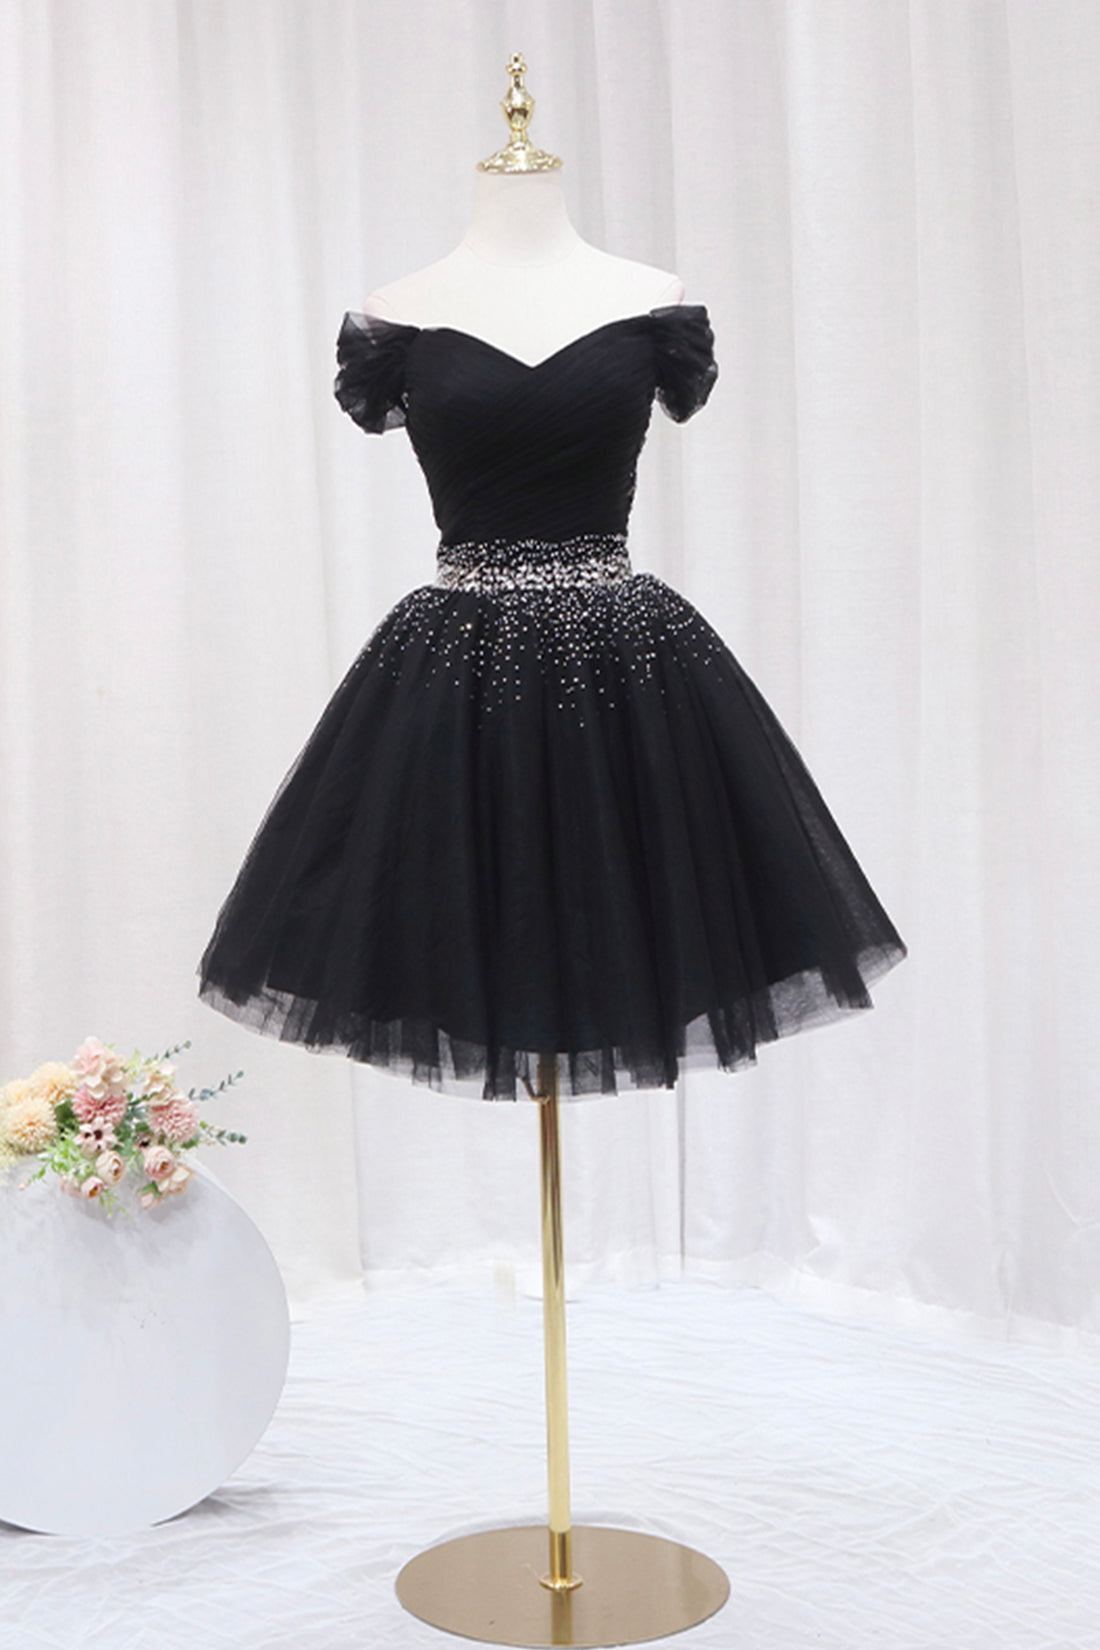 Black Tulle Beaded Short Prom Dress, Black Off Shoulder Evening Party Dress